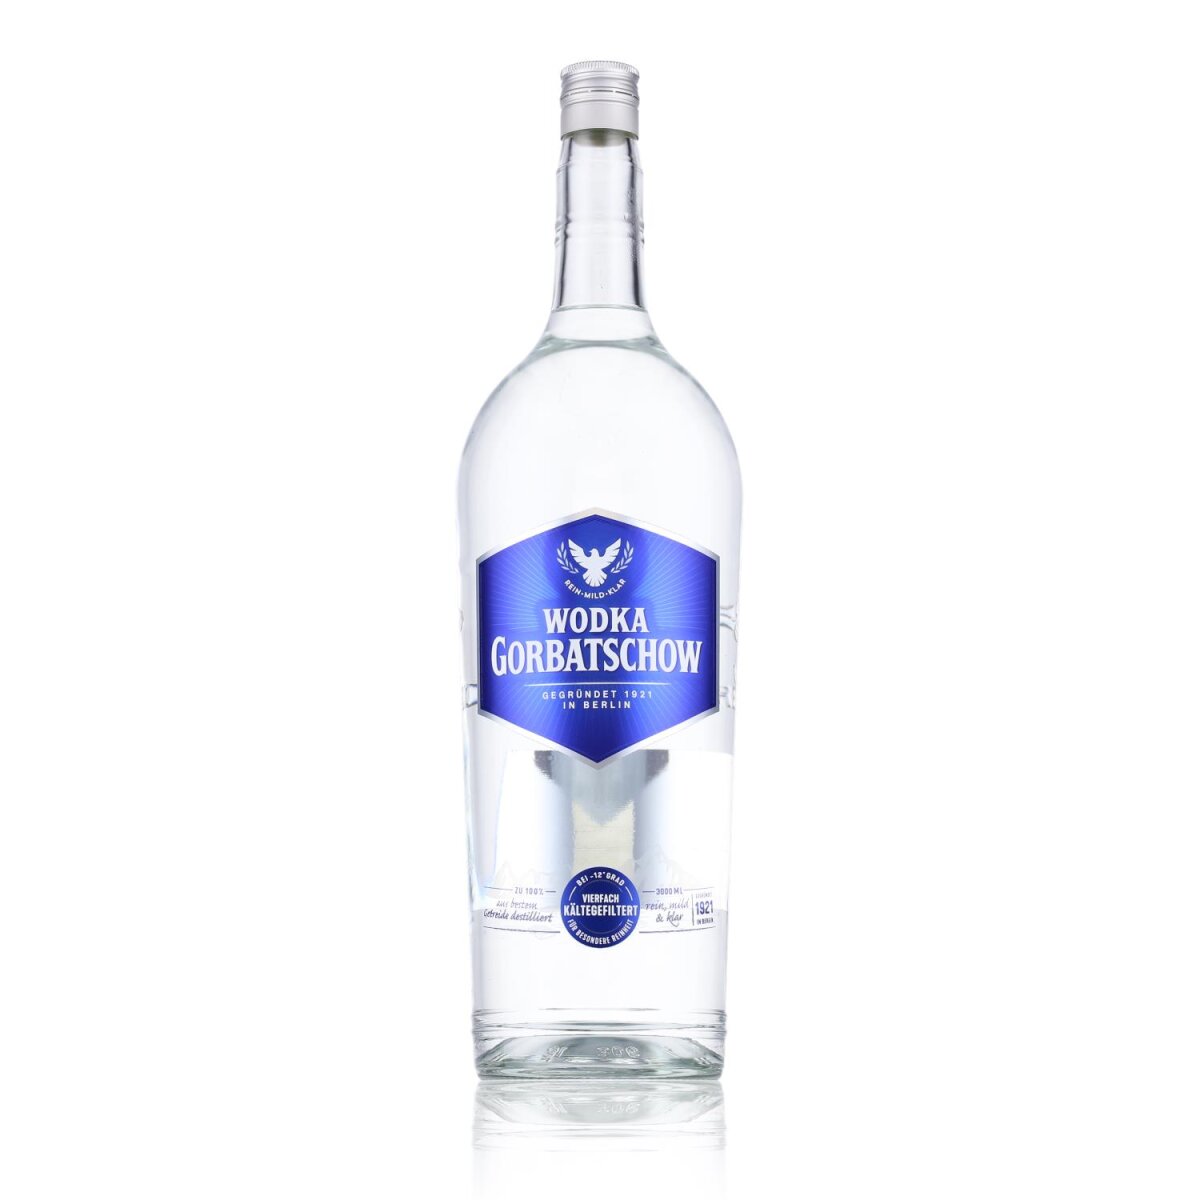 Gorbatschow Wodka 37,5% € Vol. 47,29 3l